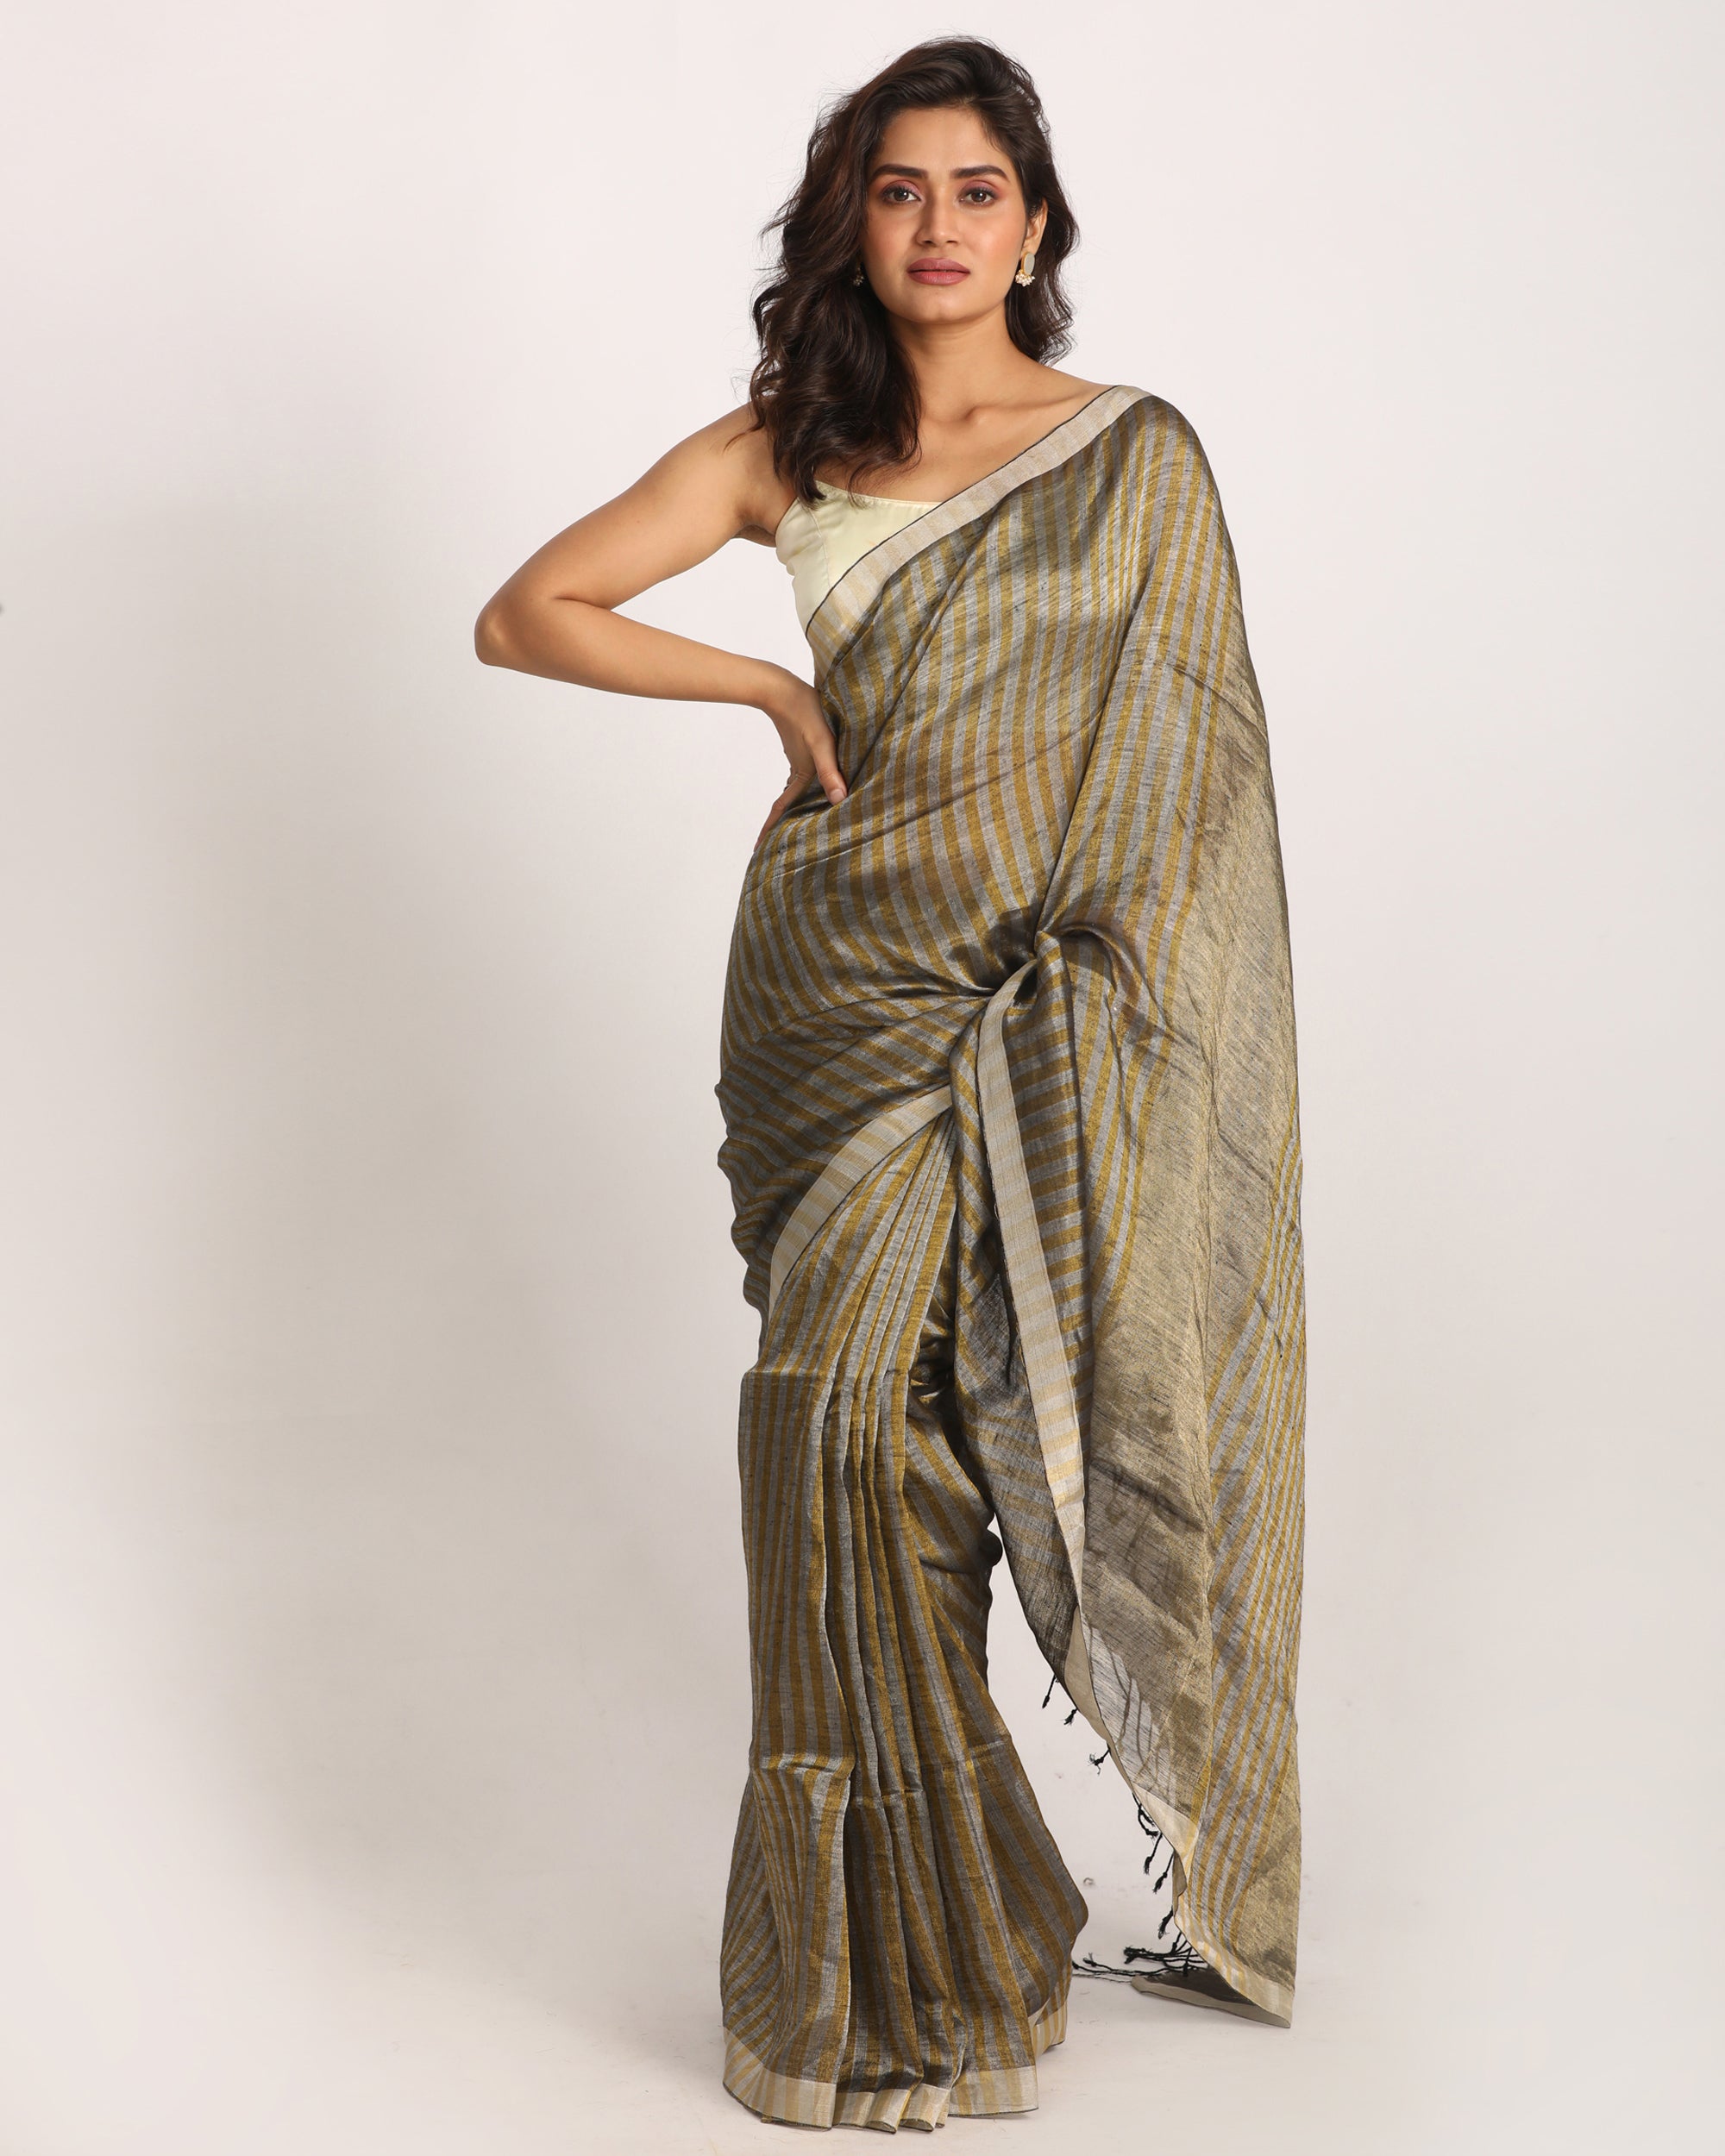 Women's Golden Silver Check Traditional Handloom Tissue Linen Saree - Angoshobha